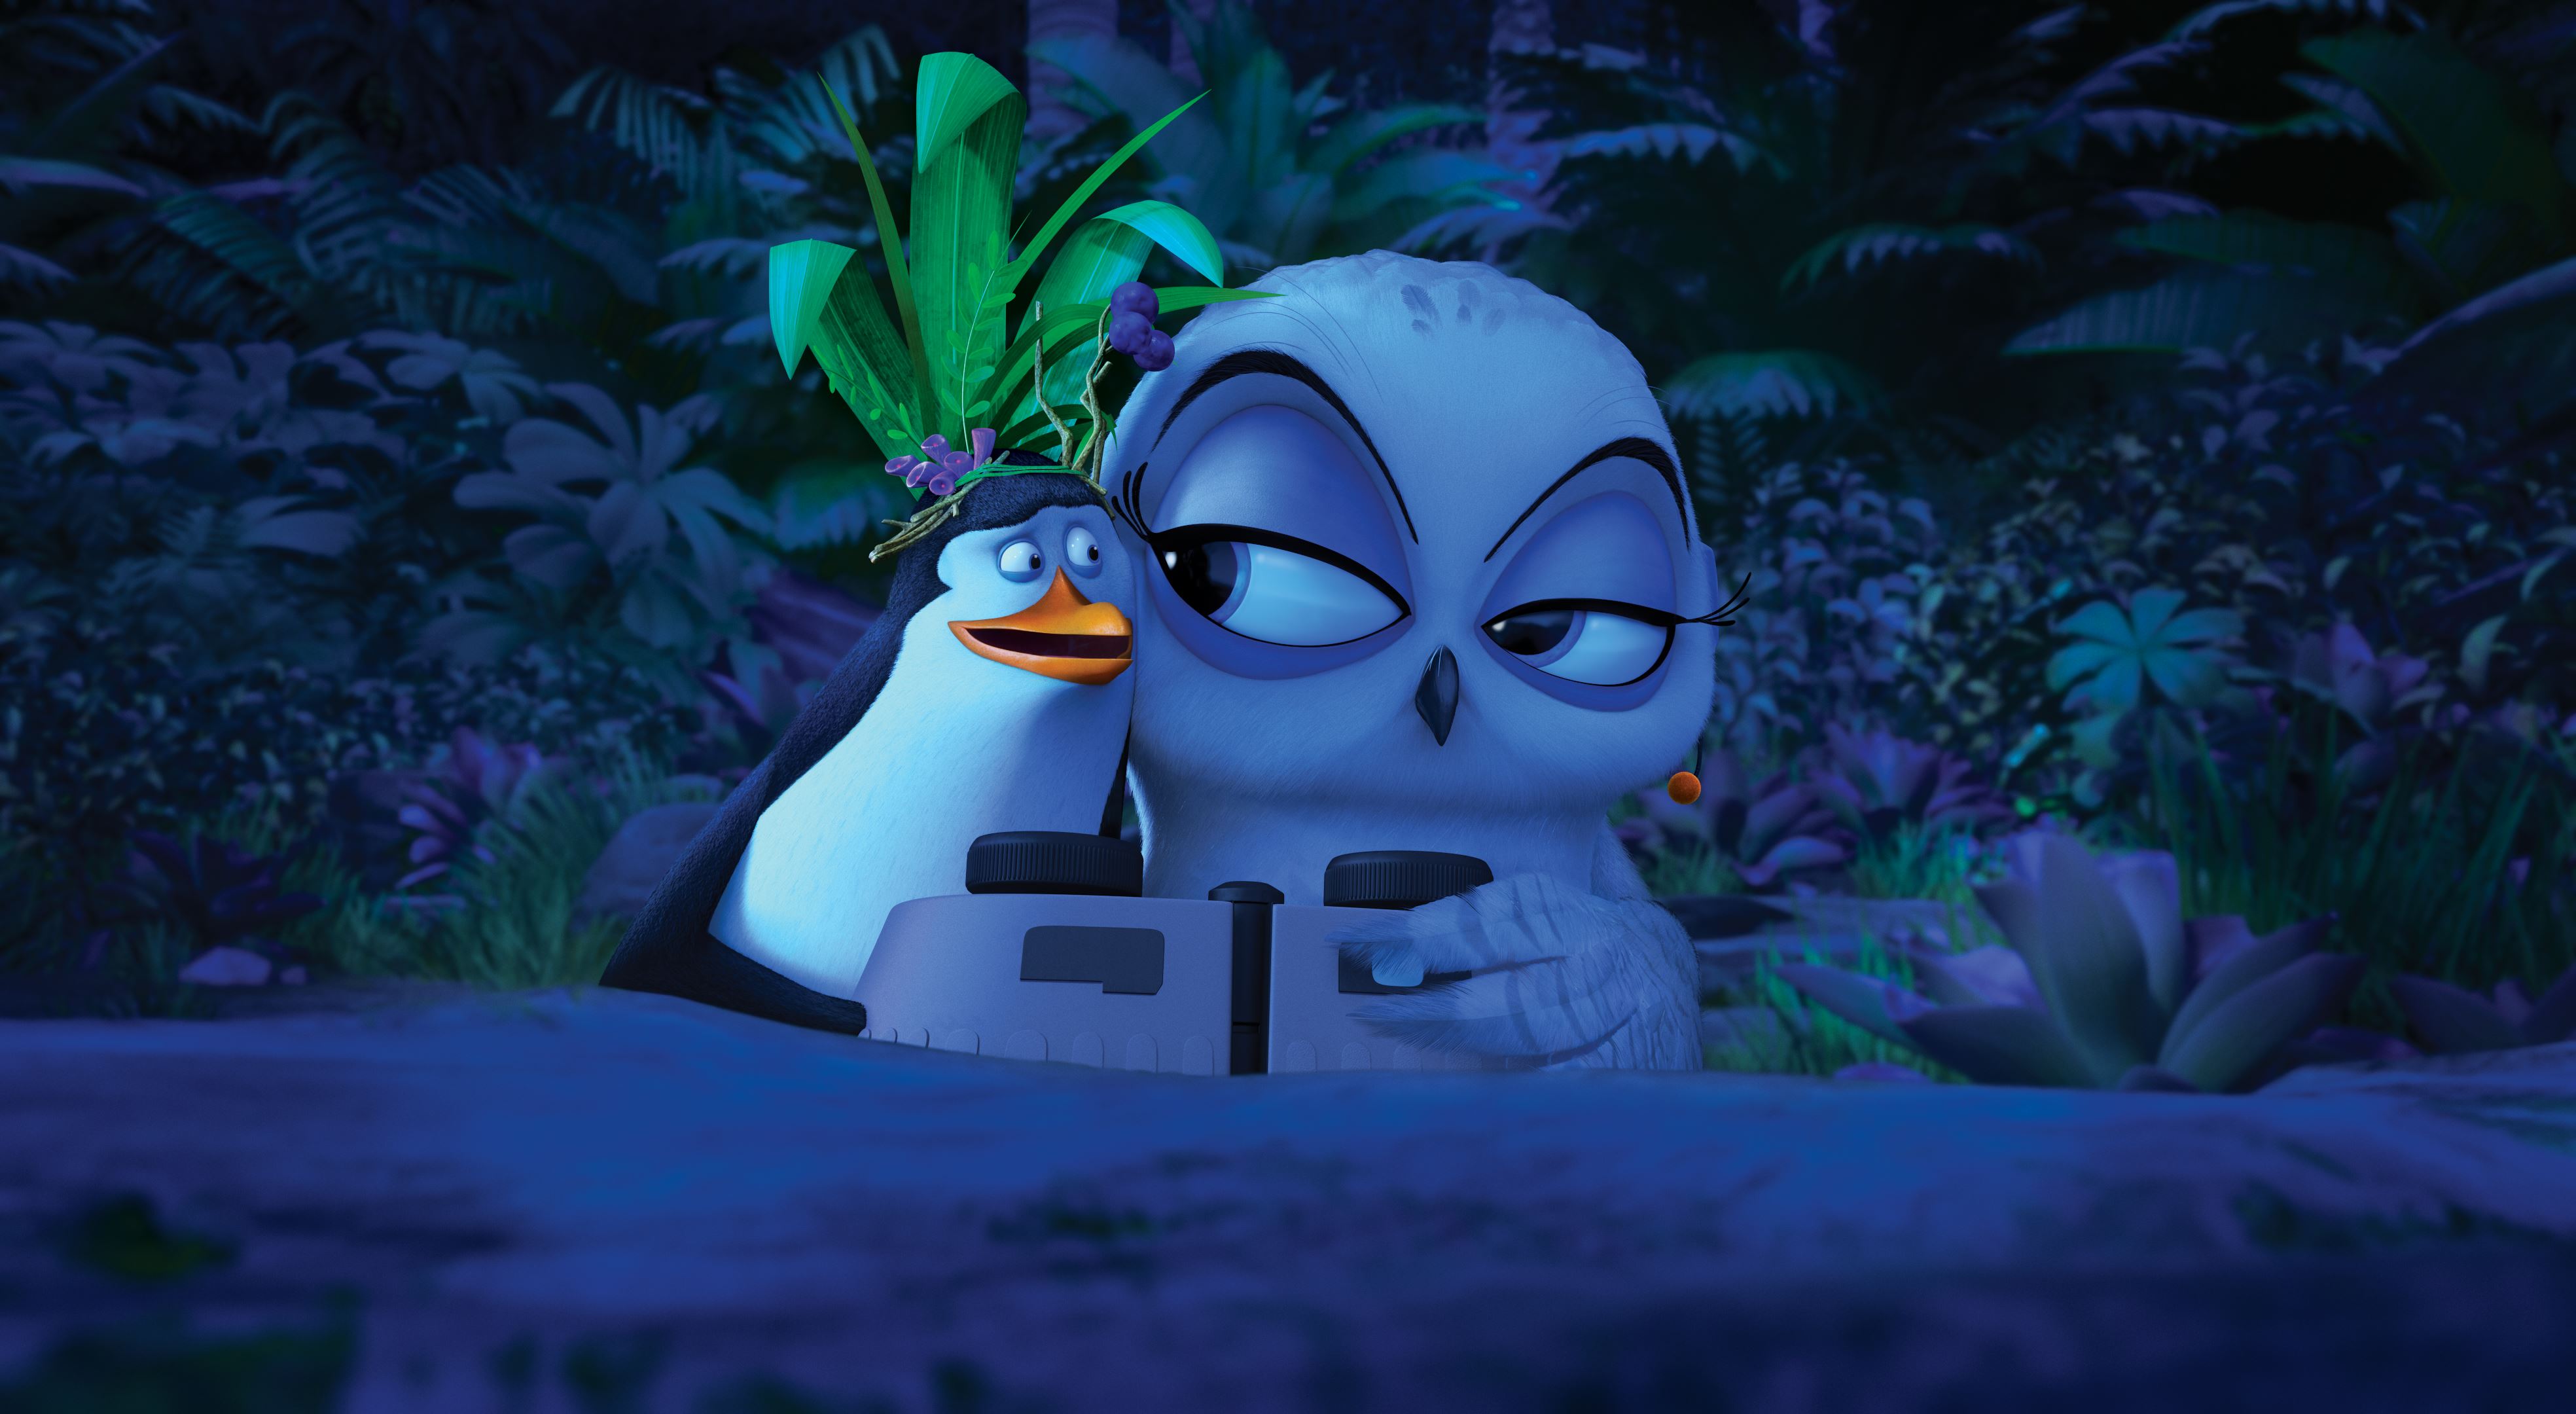 Пингвины Мадагаскара мультфильм 2014